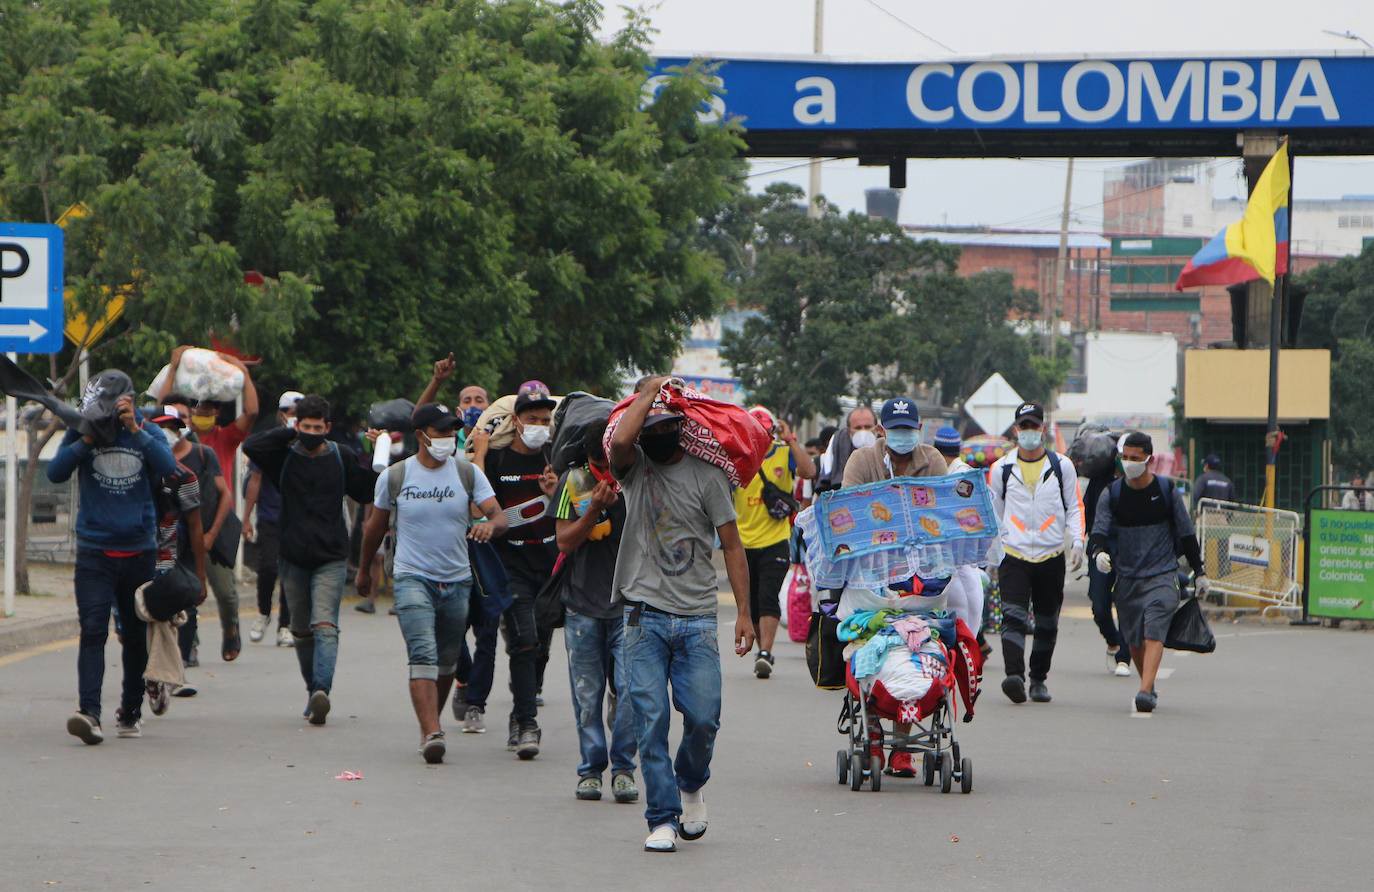 Inicia el registro para regularización de migrantes venezolanos en Colombia este #5May